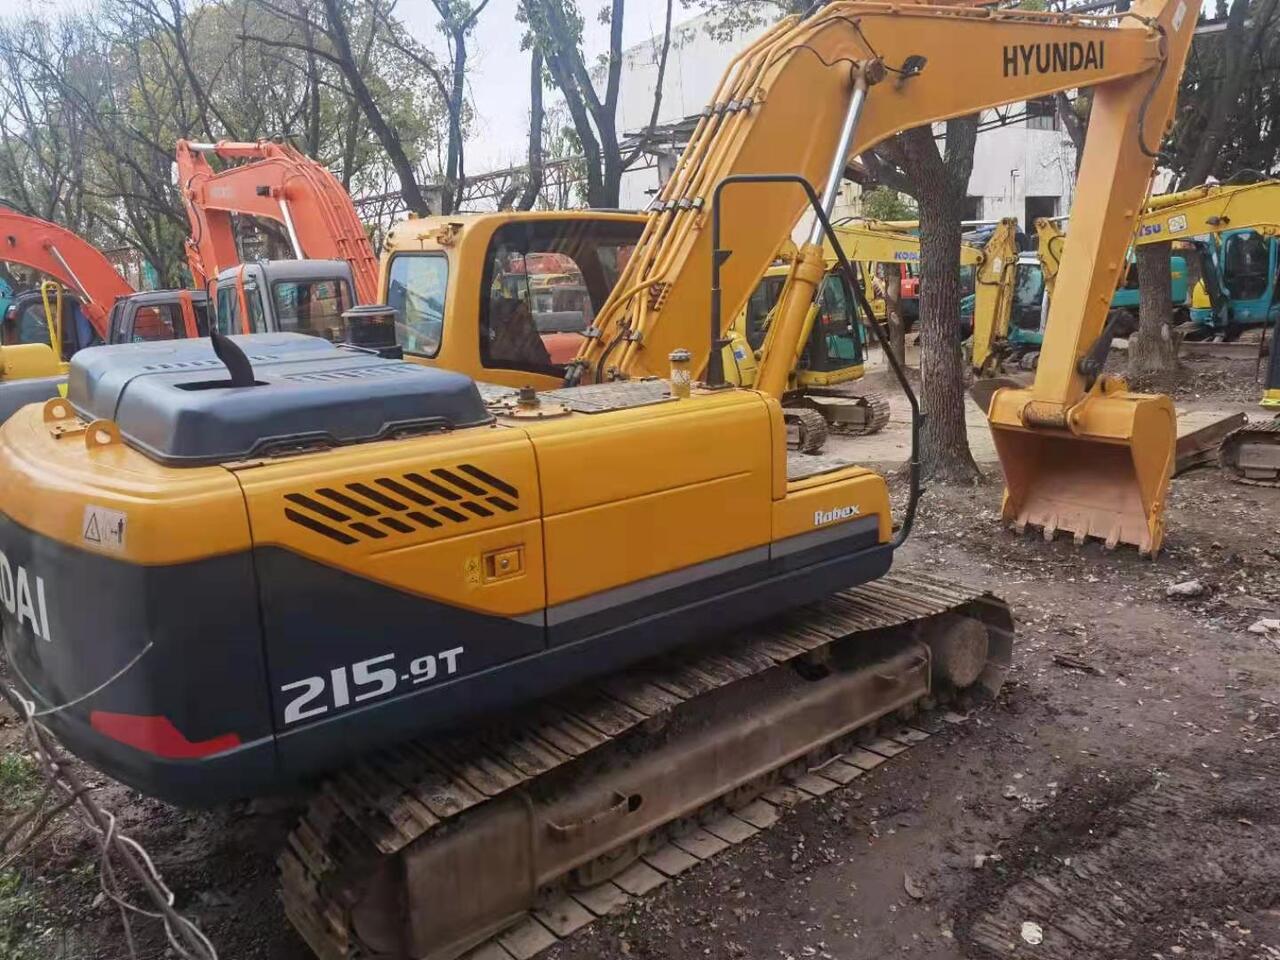 HYUNDAI R215-9T - Crawler excavator: picture 2